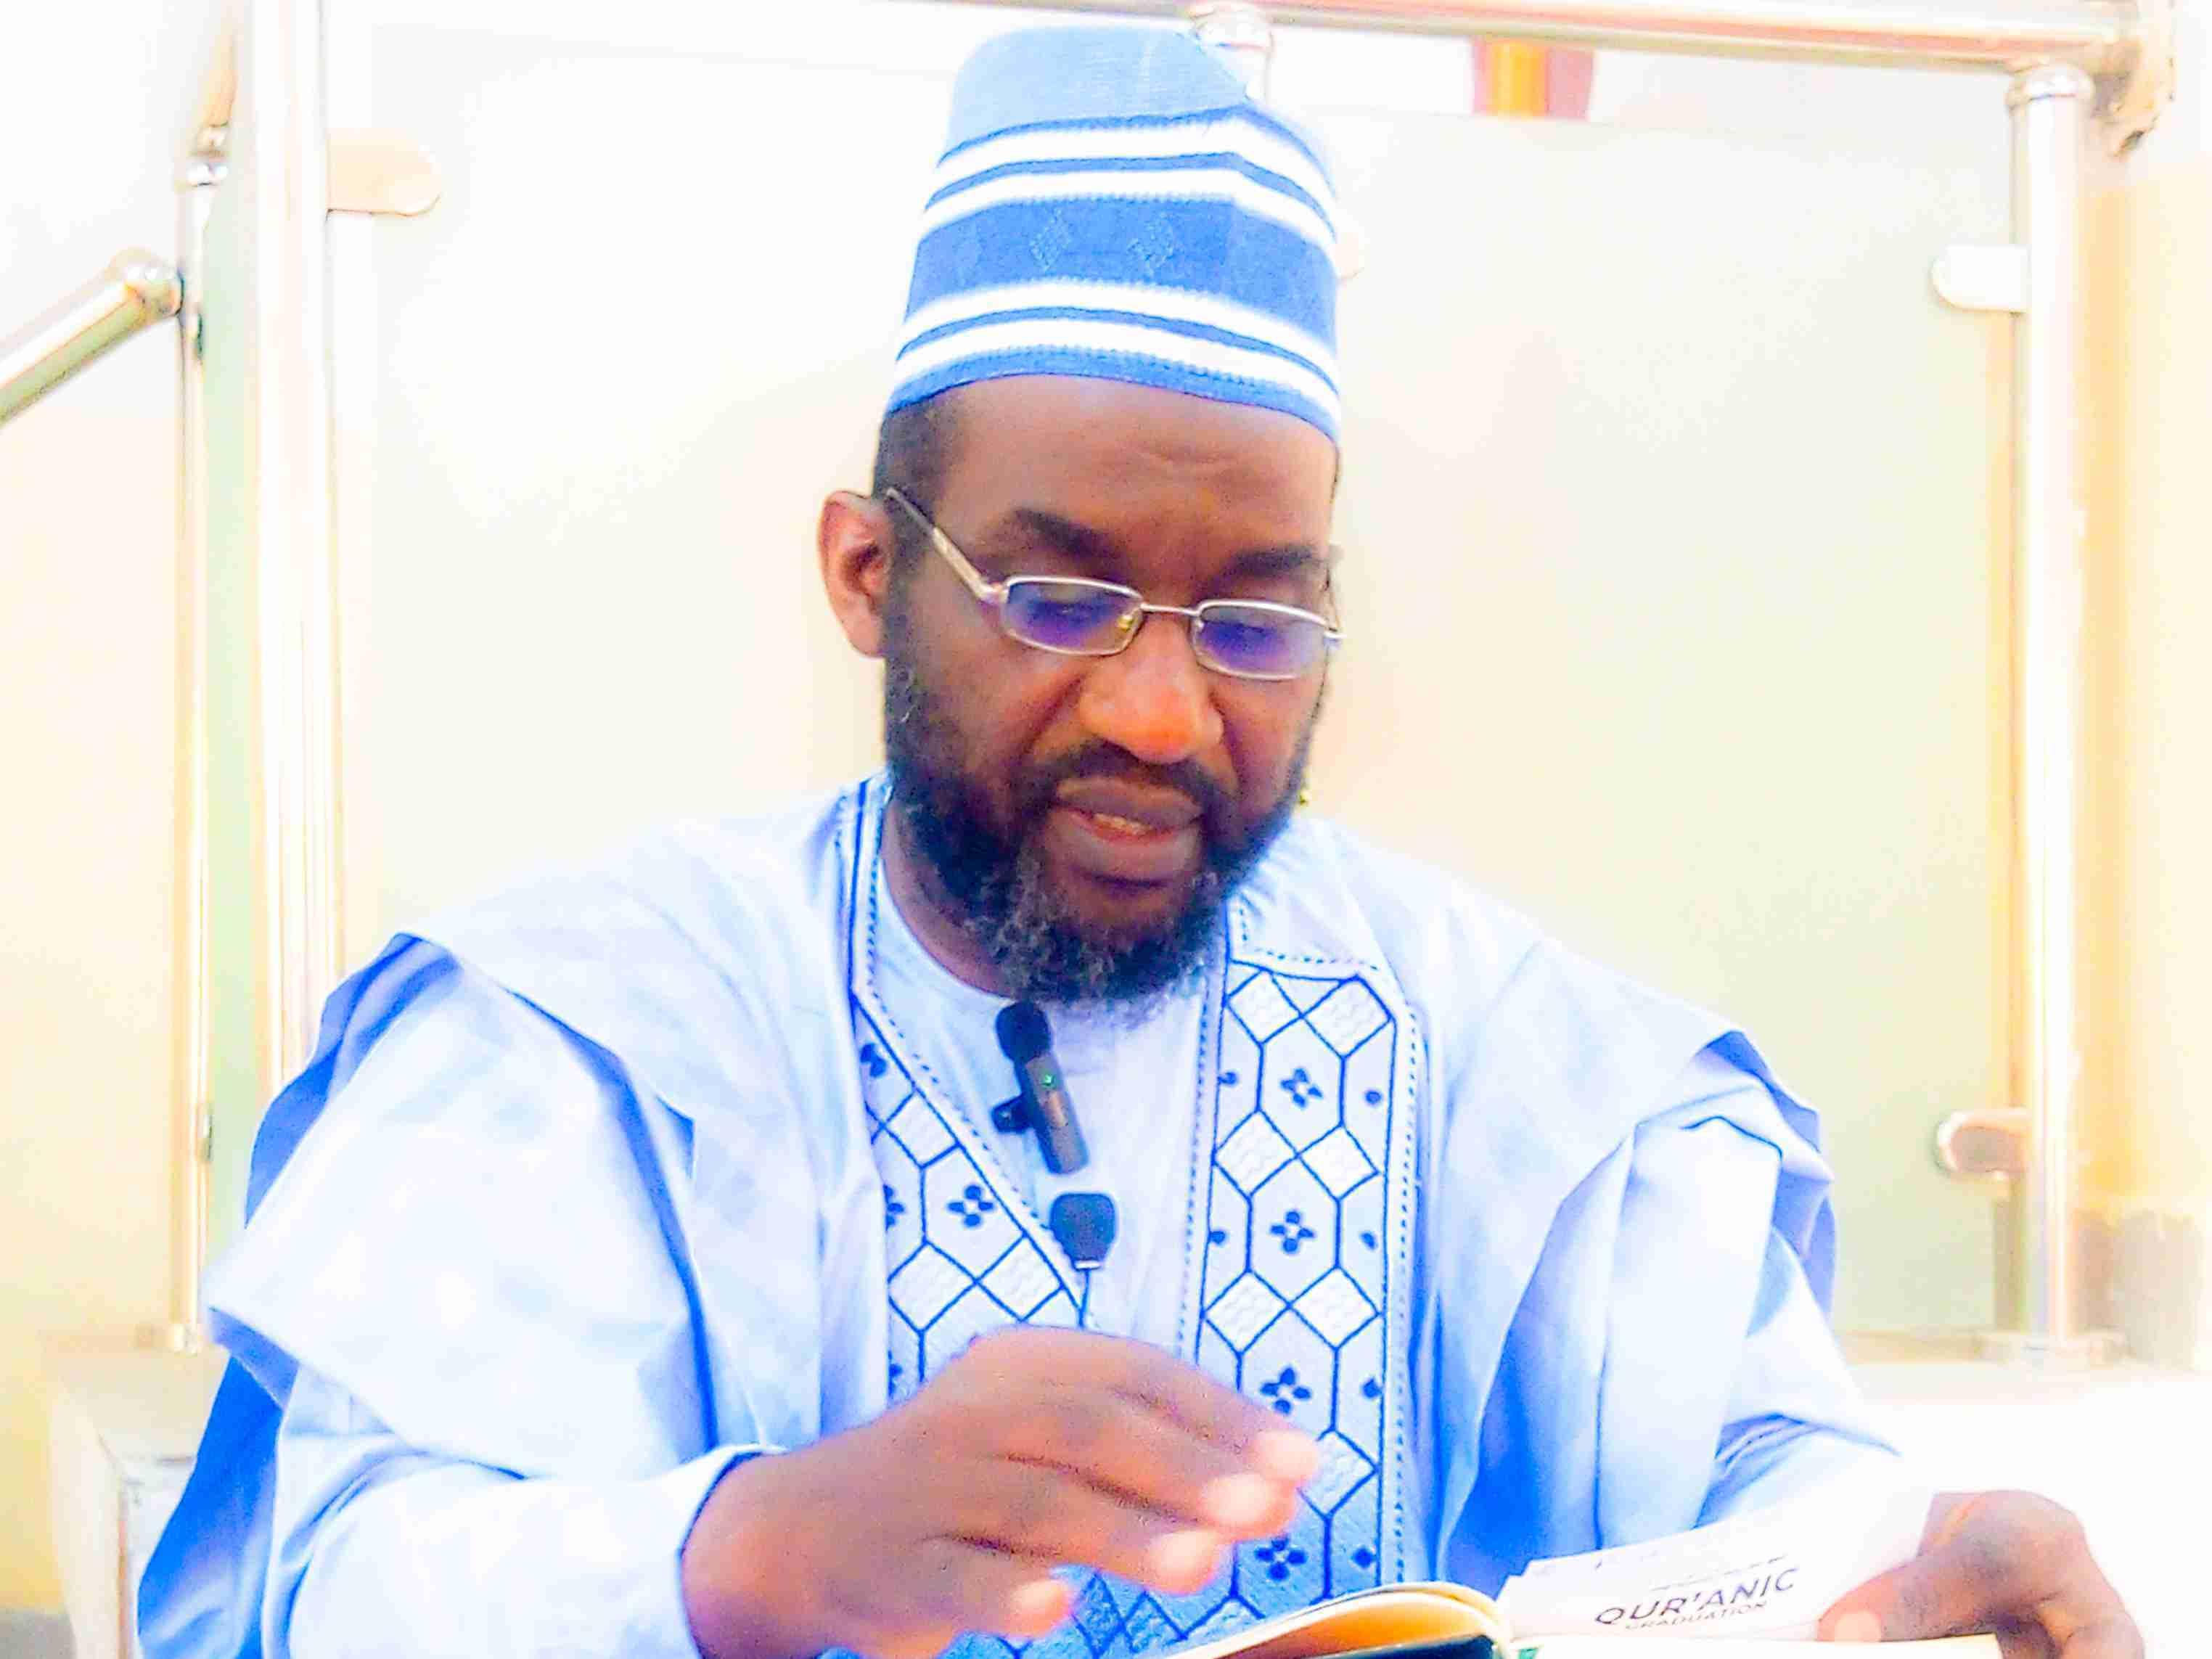 Sheikh Sunusi Garba Sharada